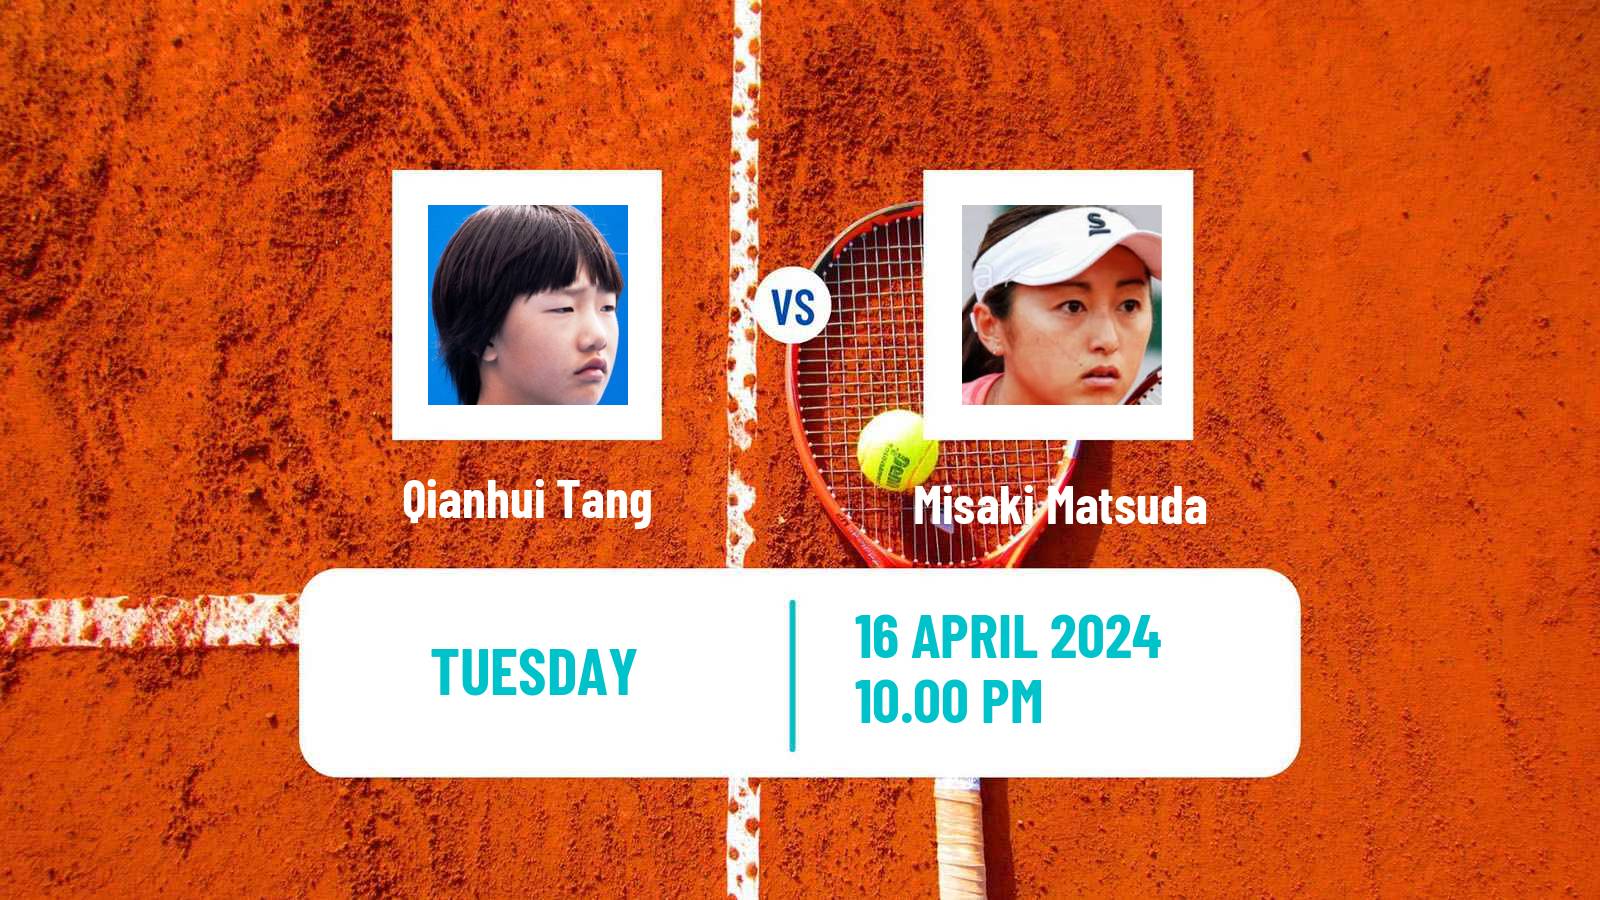 Tennis ITF W50 Shenzhen 2 Women Qianhui Tang - Misaki Matsuda